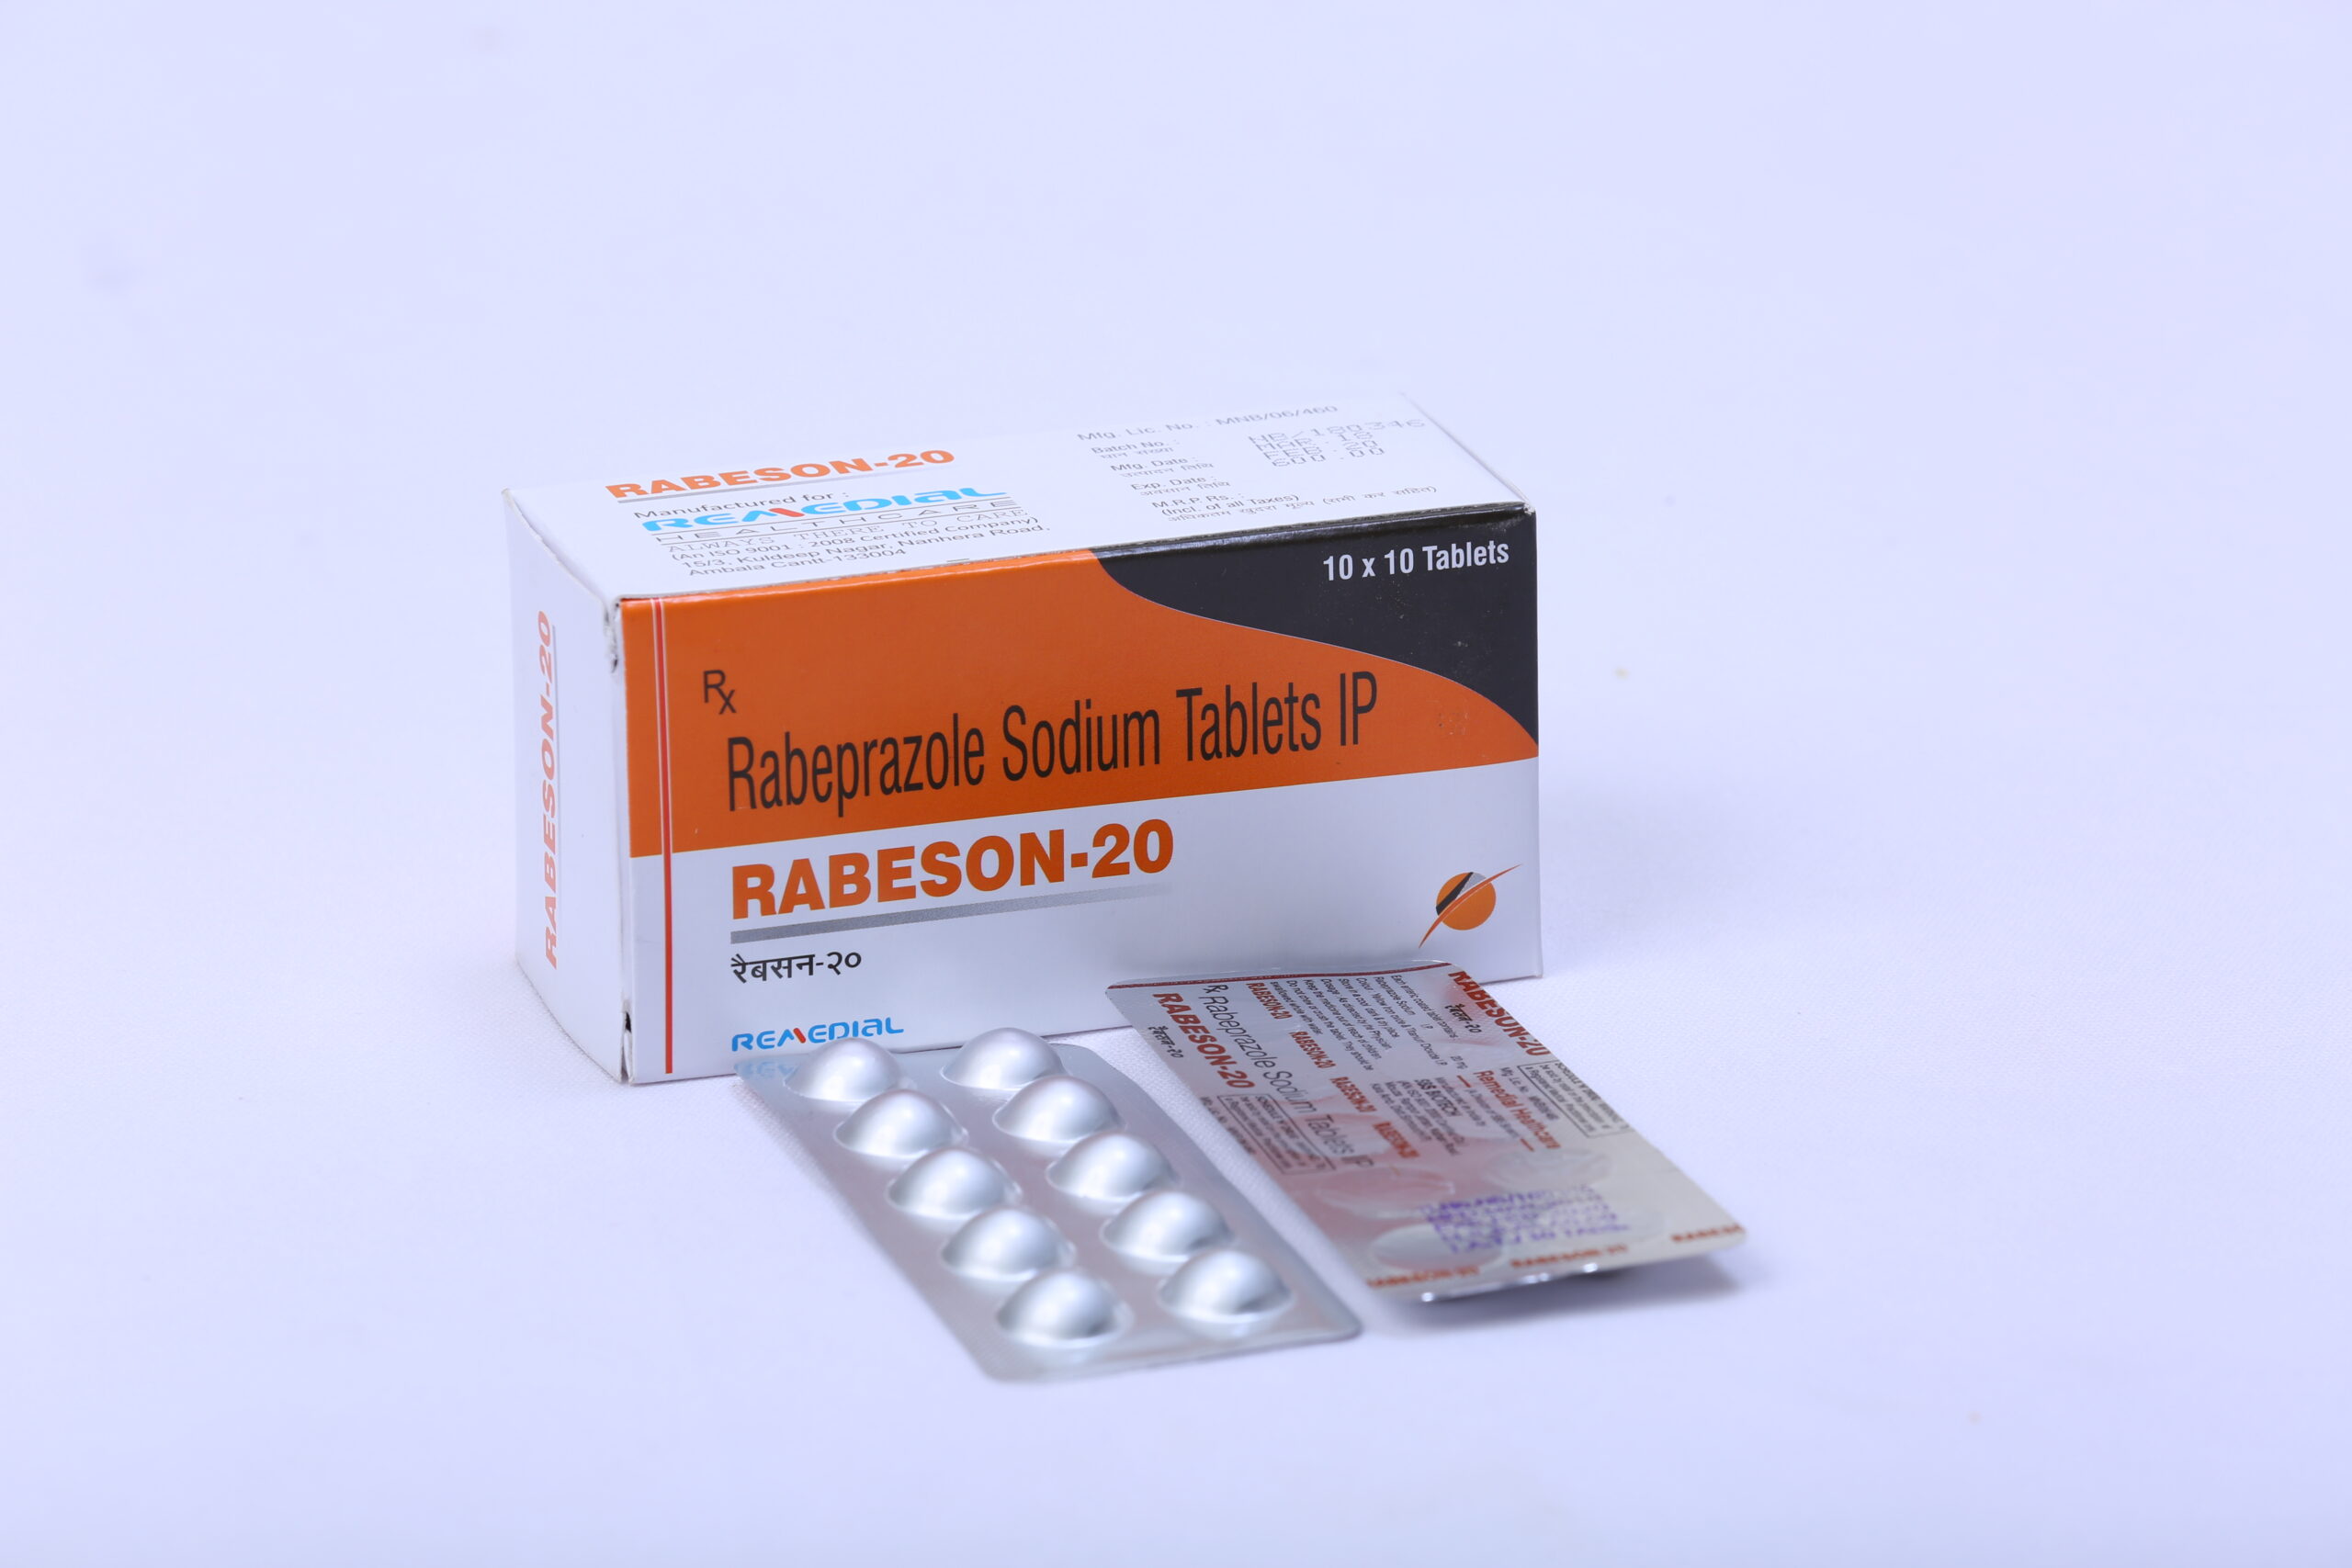 RABESON-20 (Rabeprazole Sodium 20mg)